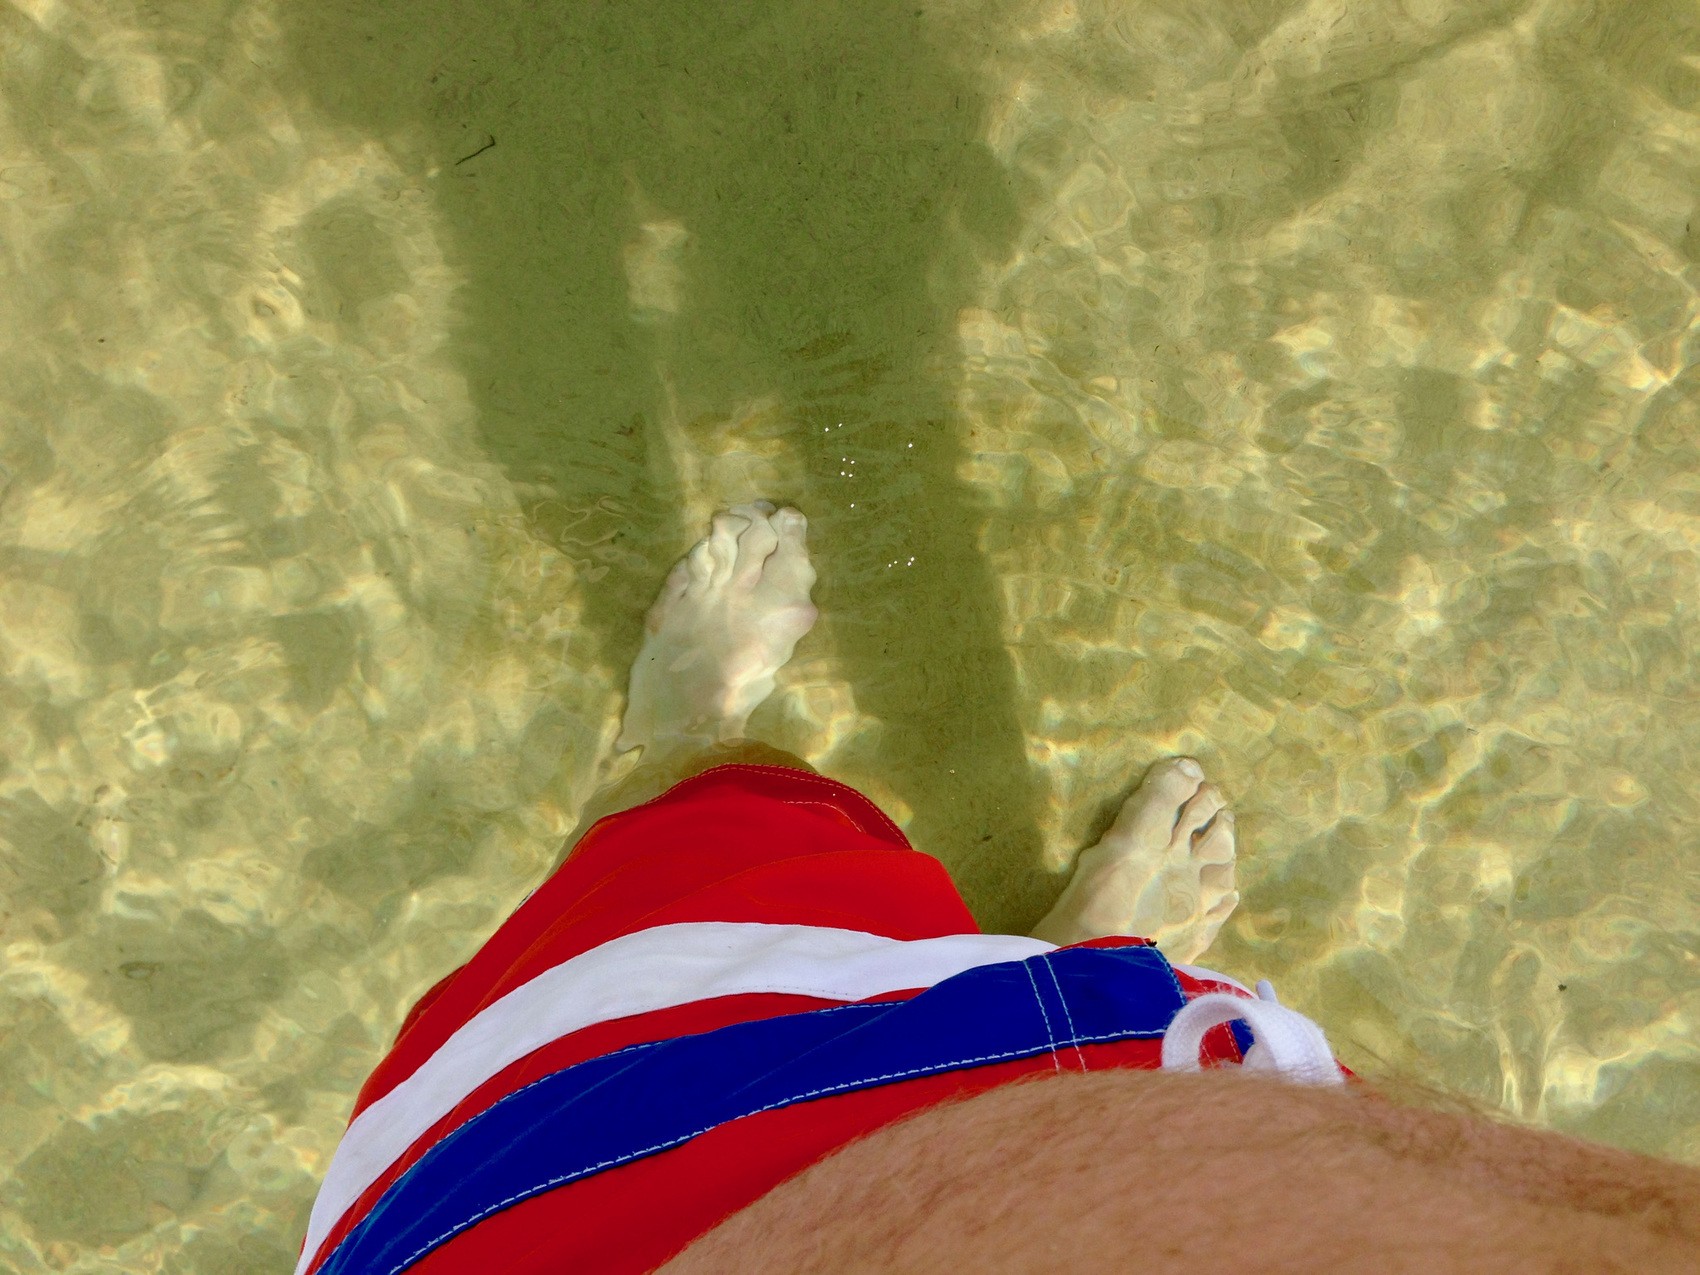 Foto taget av person ner på fötterna som står i vatten. Vattnet är kristallklart och botten är sand.